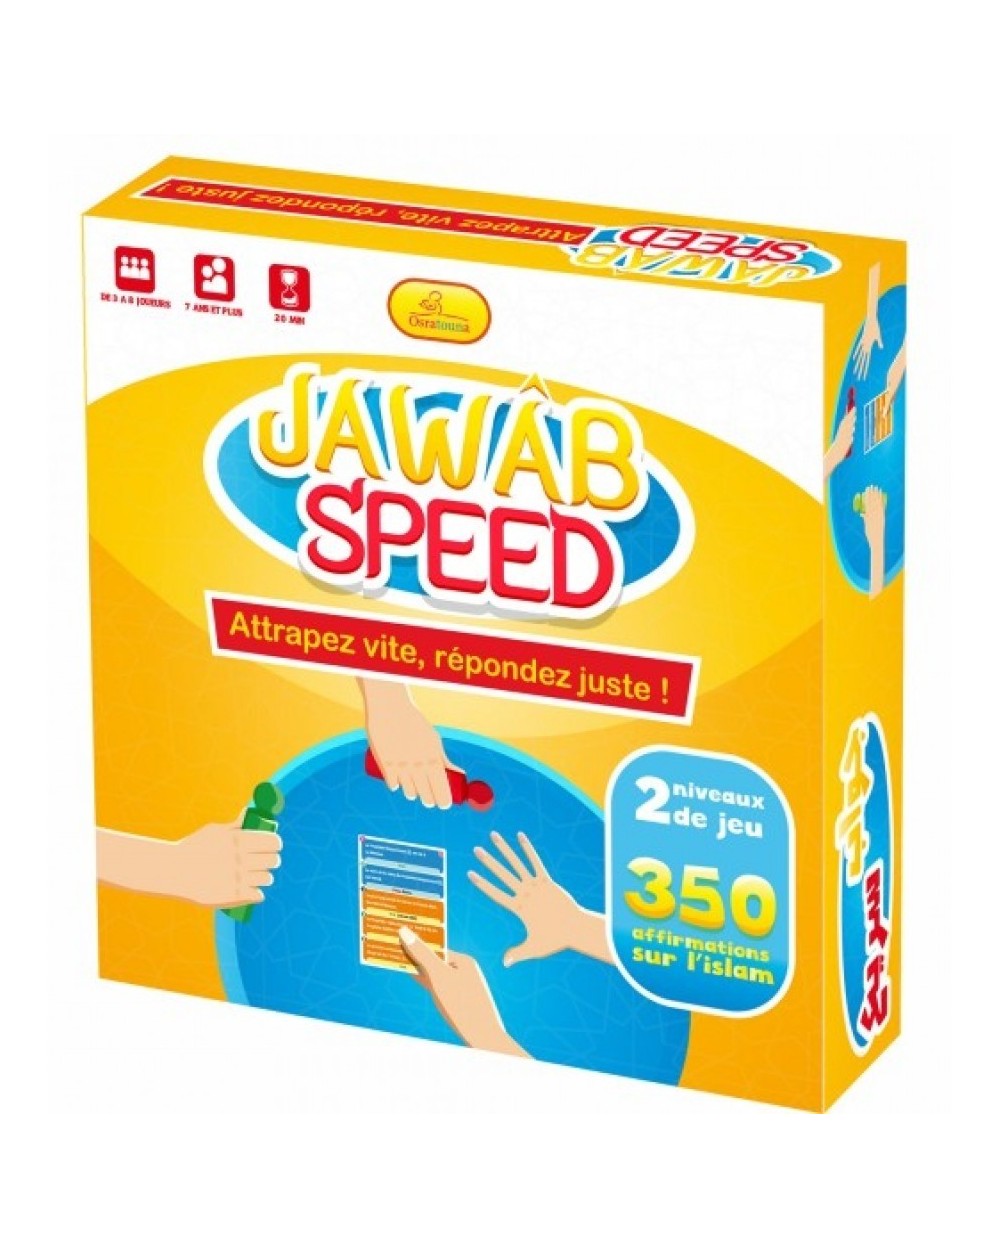 Jawad Speed - game